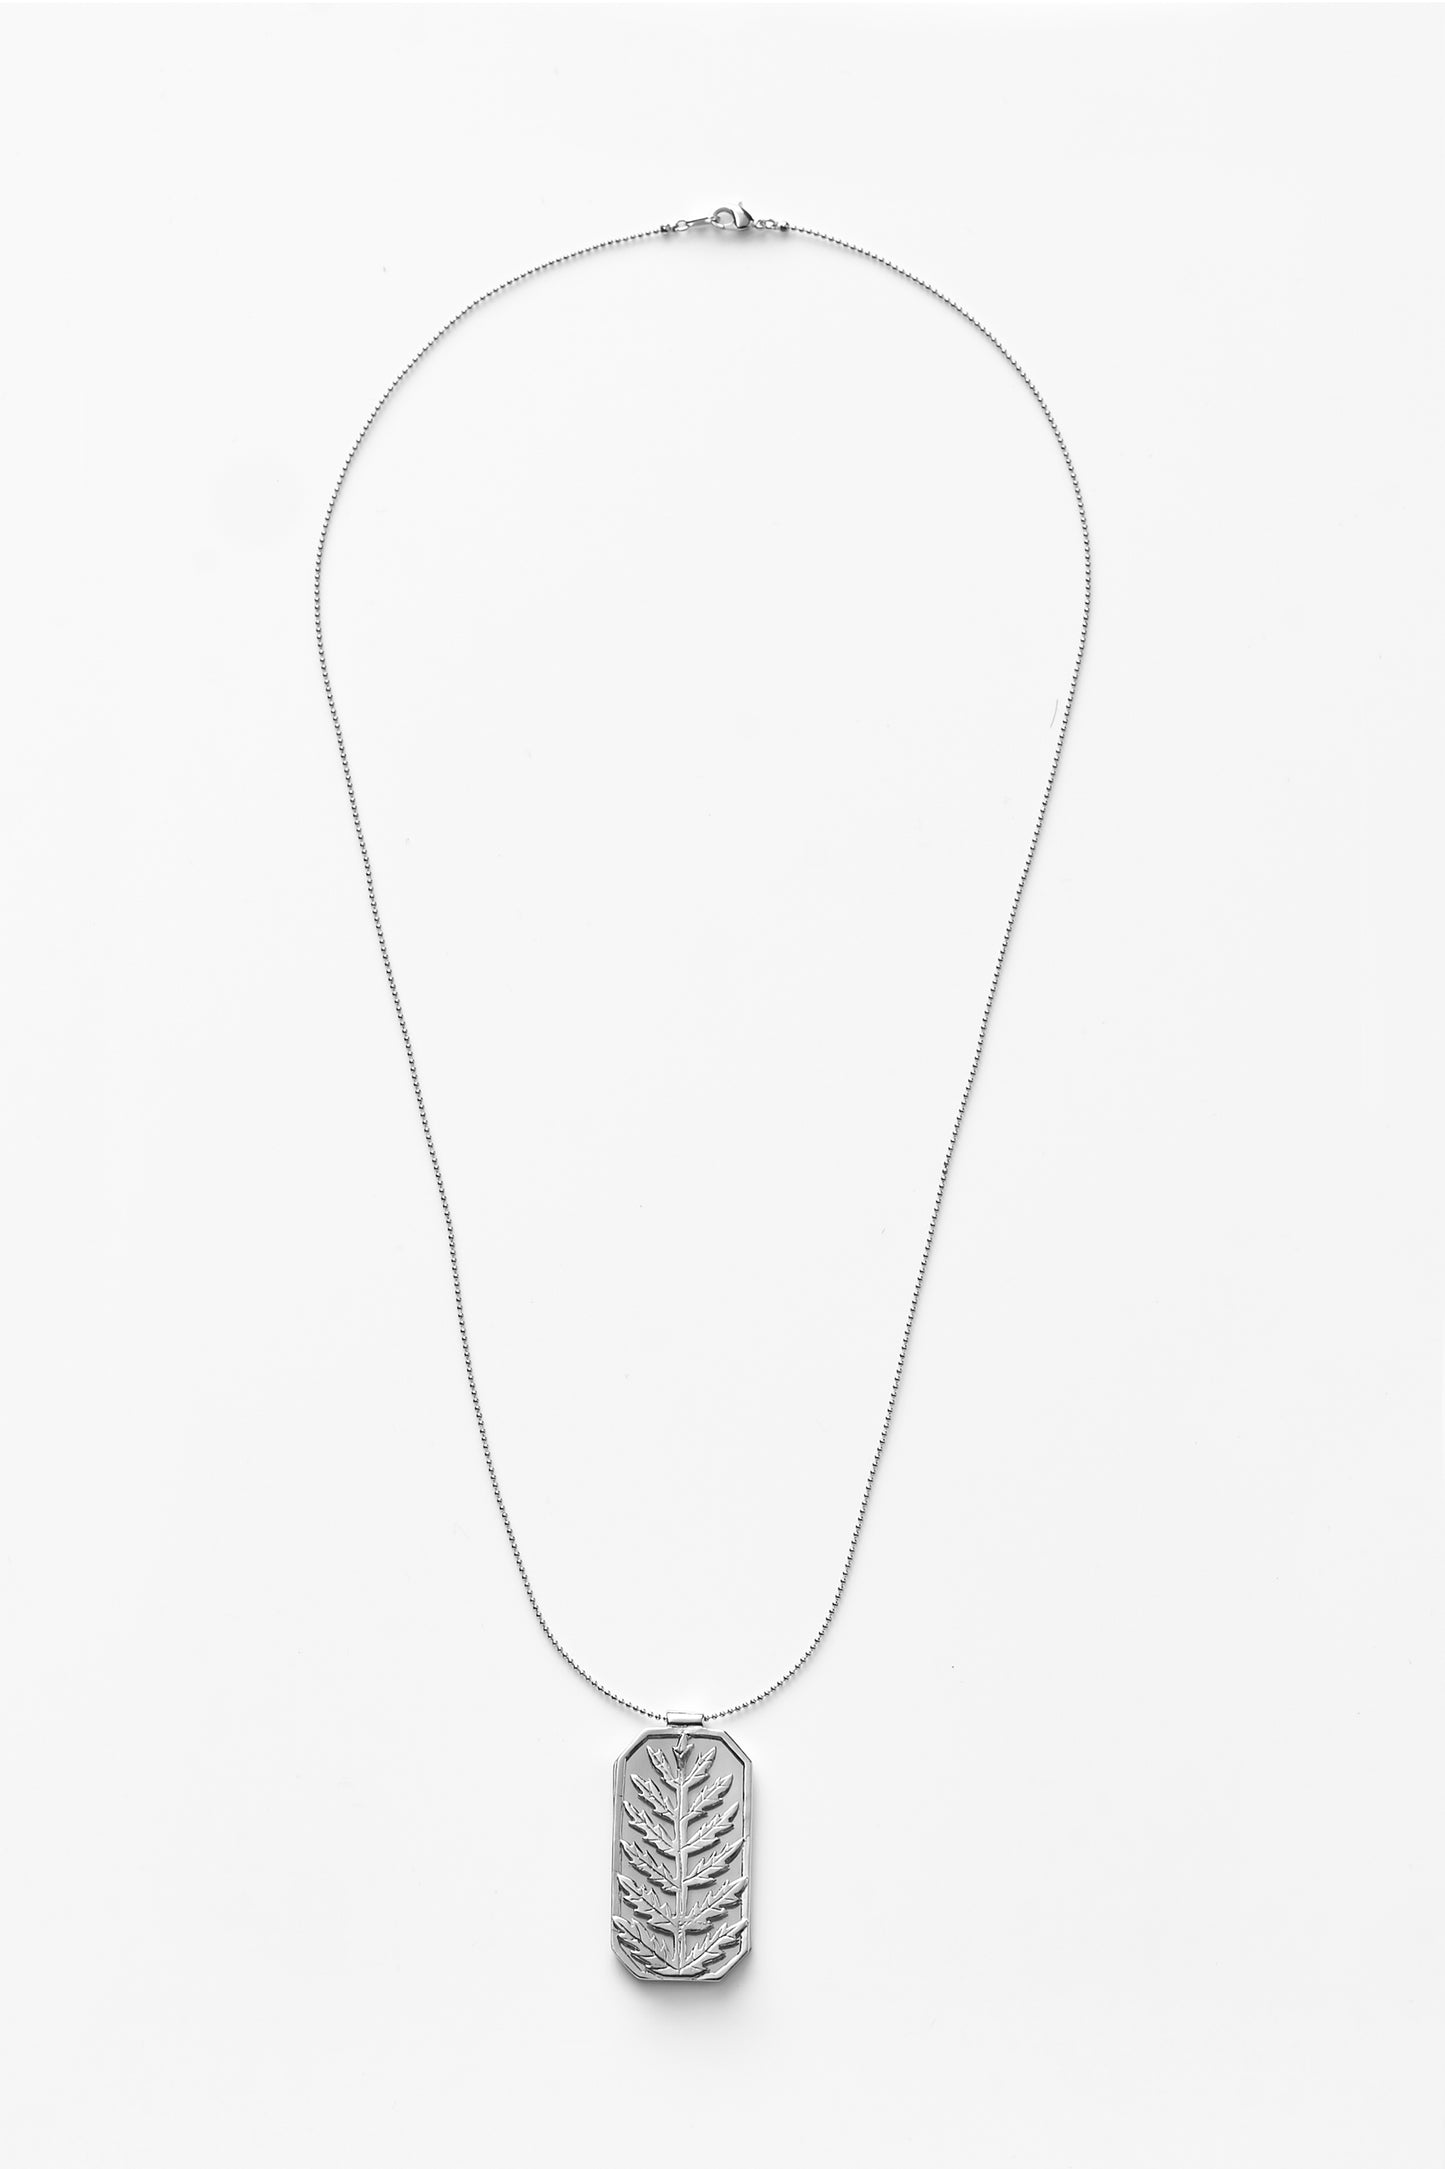 【綻放】框中風景-陰石蕨項鍊/預購訂製款/925純銀/黃銅鍍20K金 Humata Repens Necklace